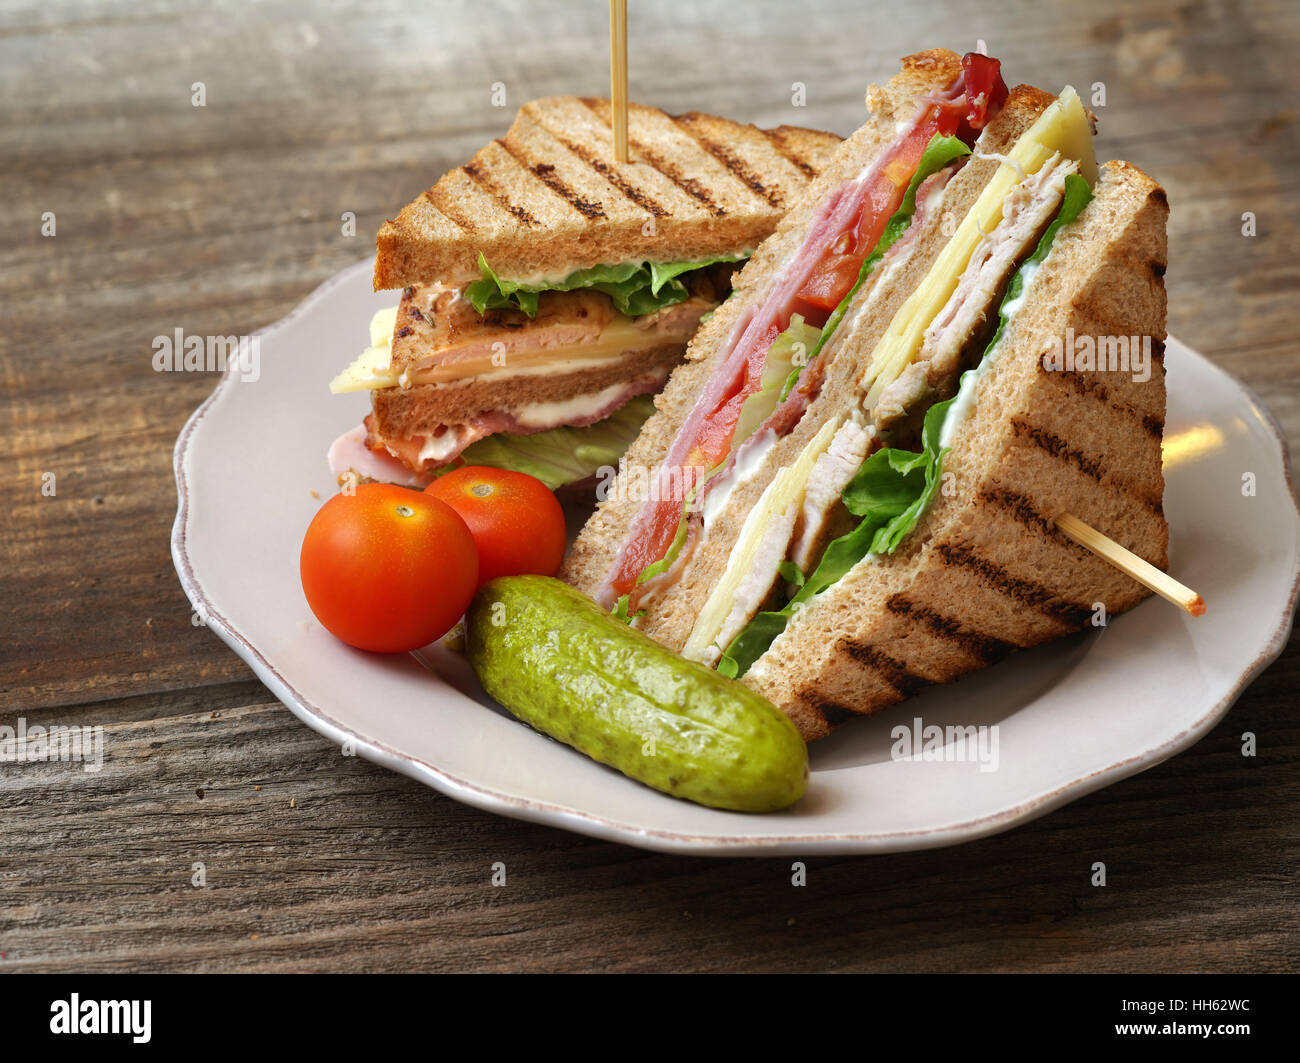 Foto di un club sandwich realizzati con la Turchia, pancetta, prosciutto, pomodoro, formaggio, lattuga e guarnito con una salamoia e due pomodori ciliegia. Foto Stock